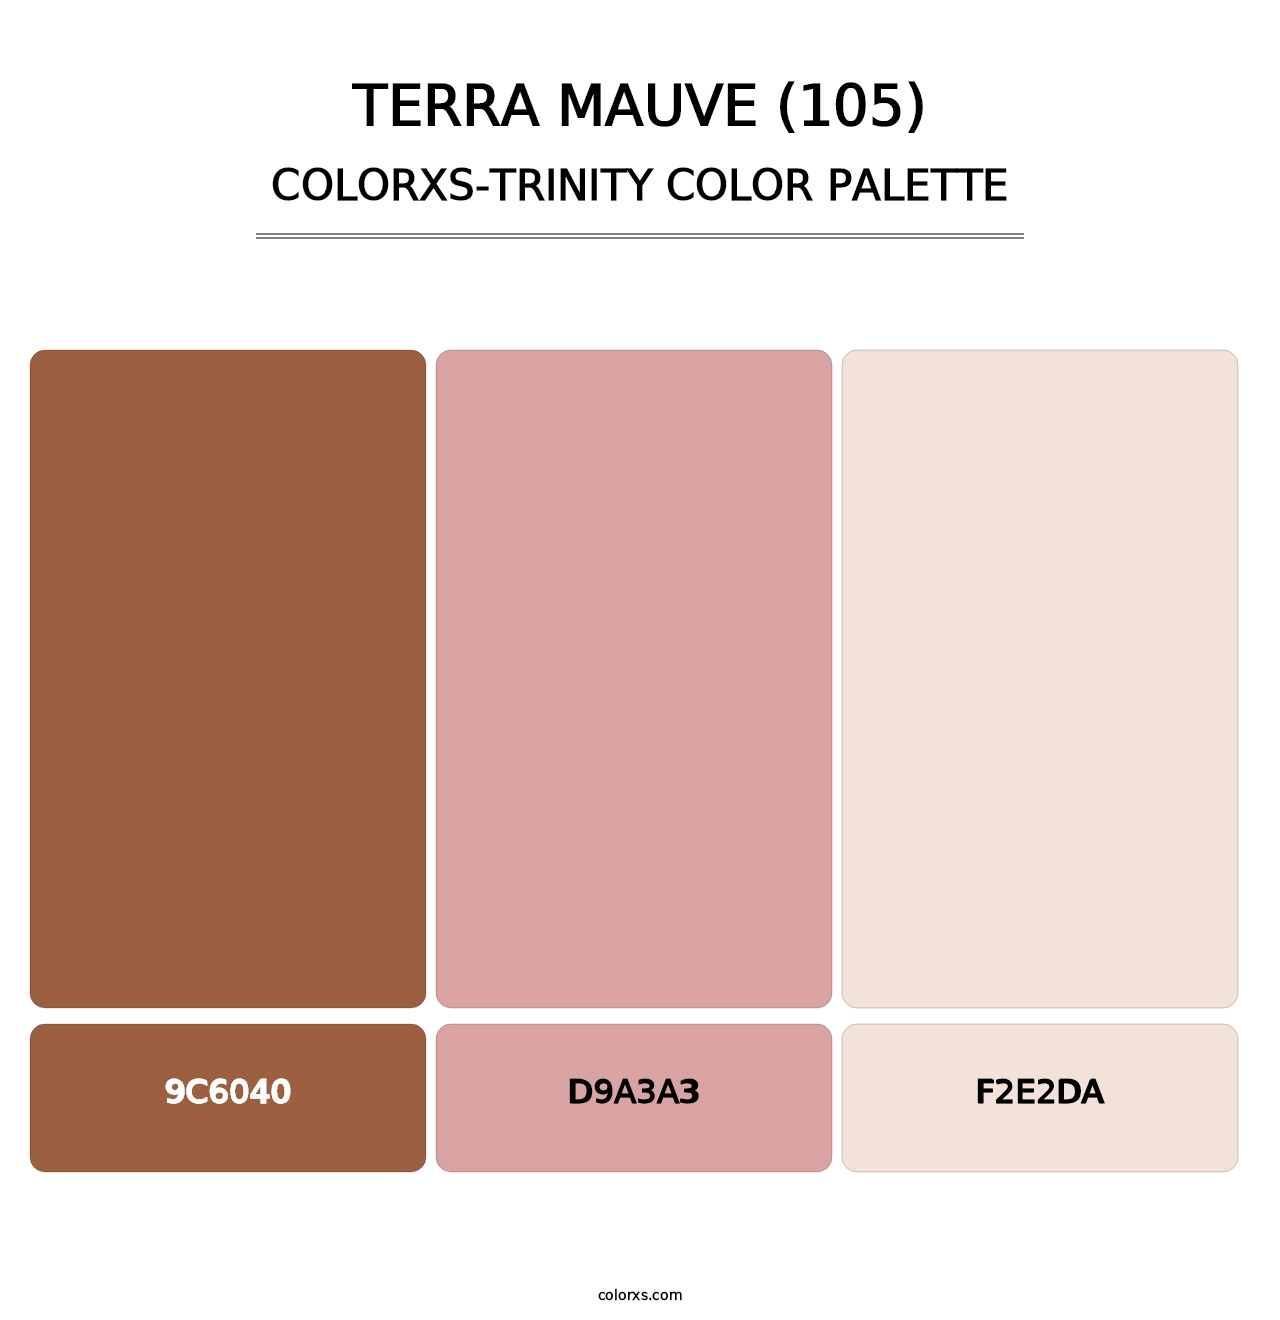 Terra Mauve (105) - Colorxs Trinity Palette